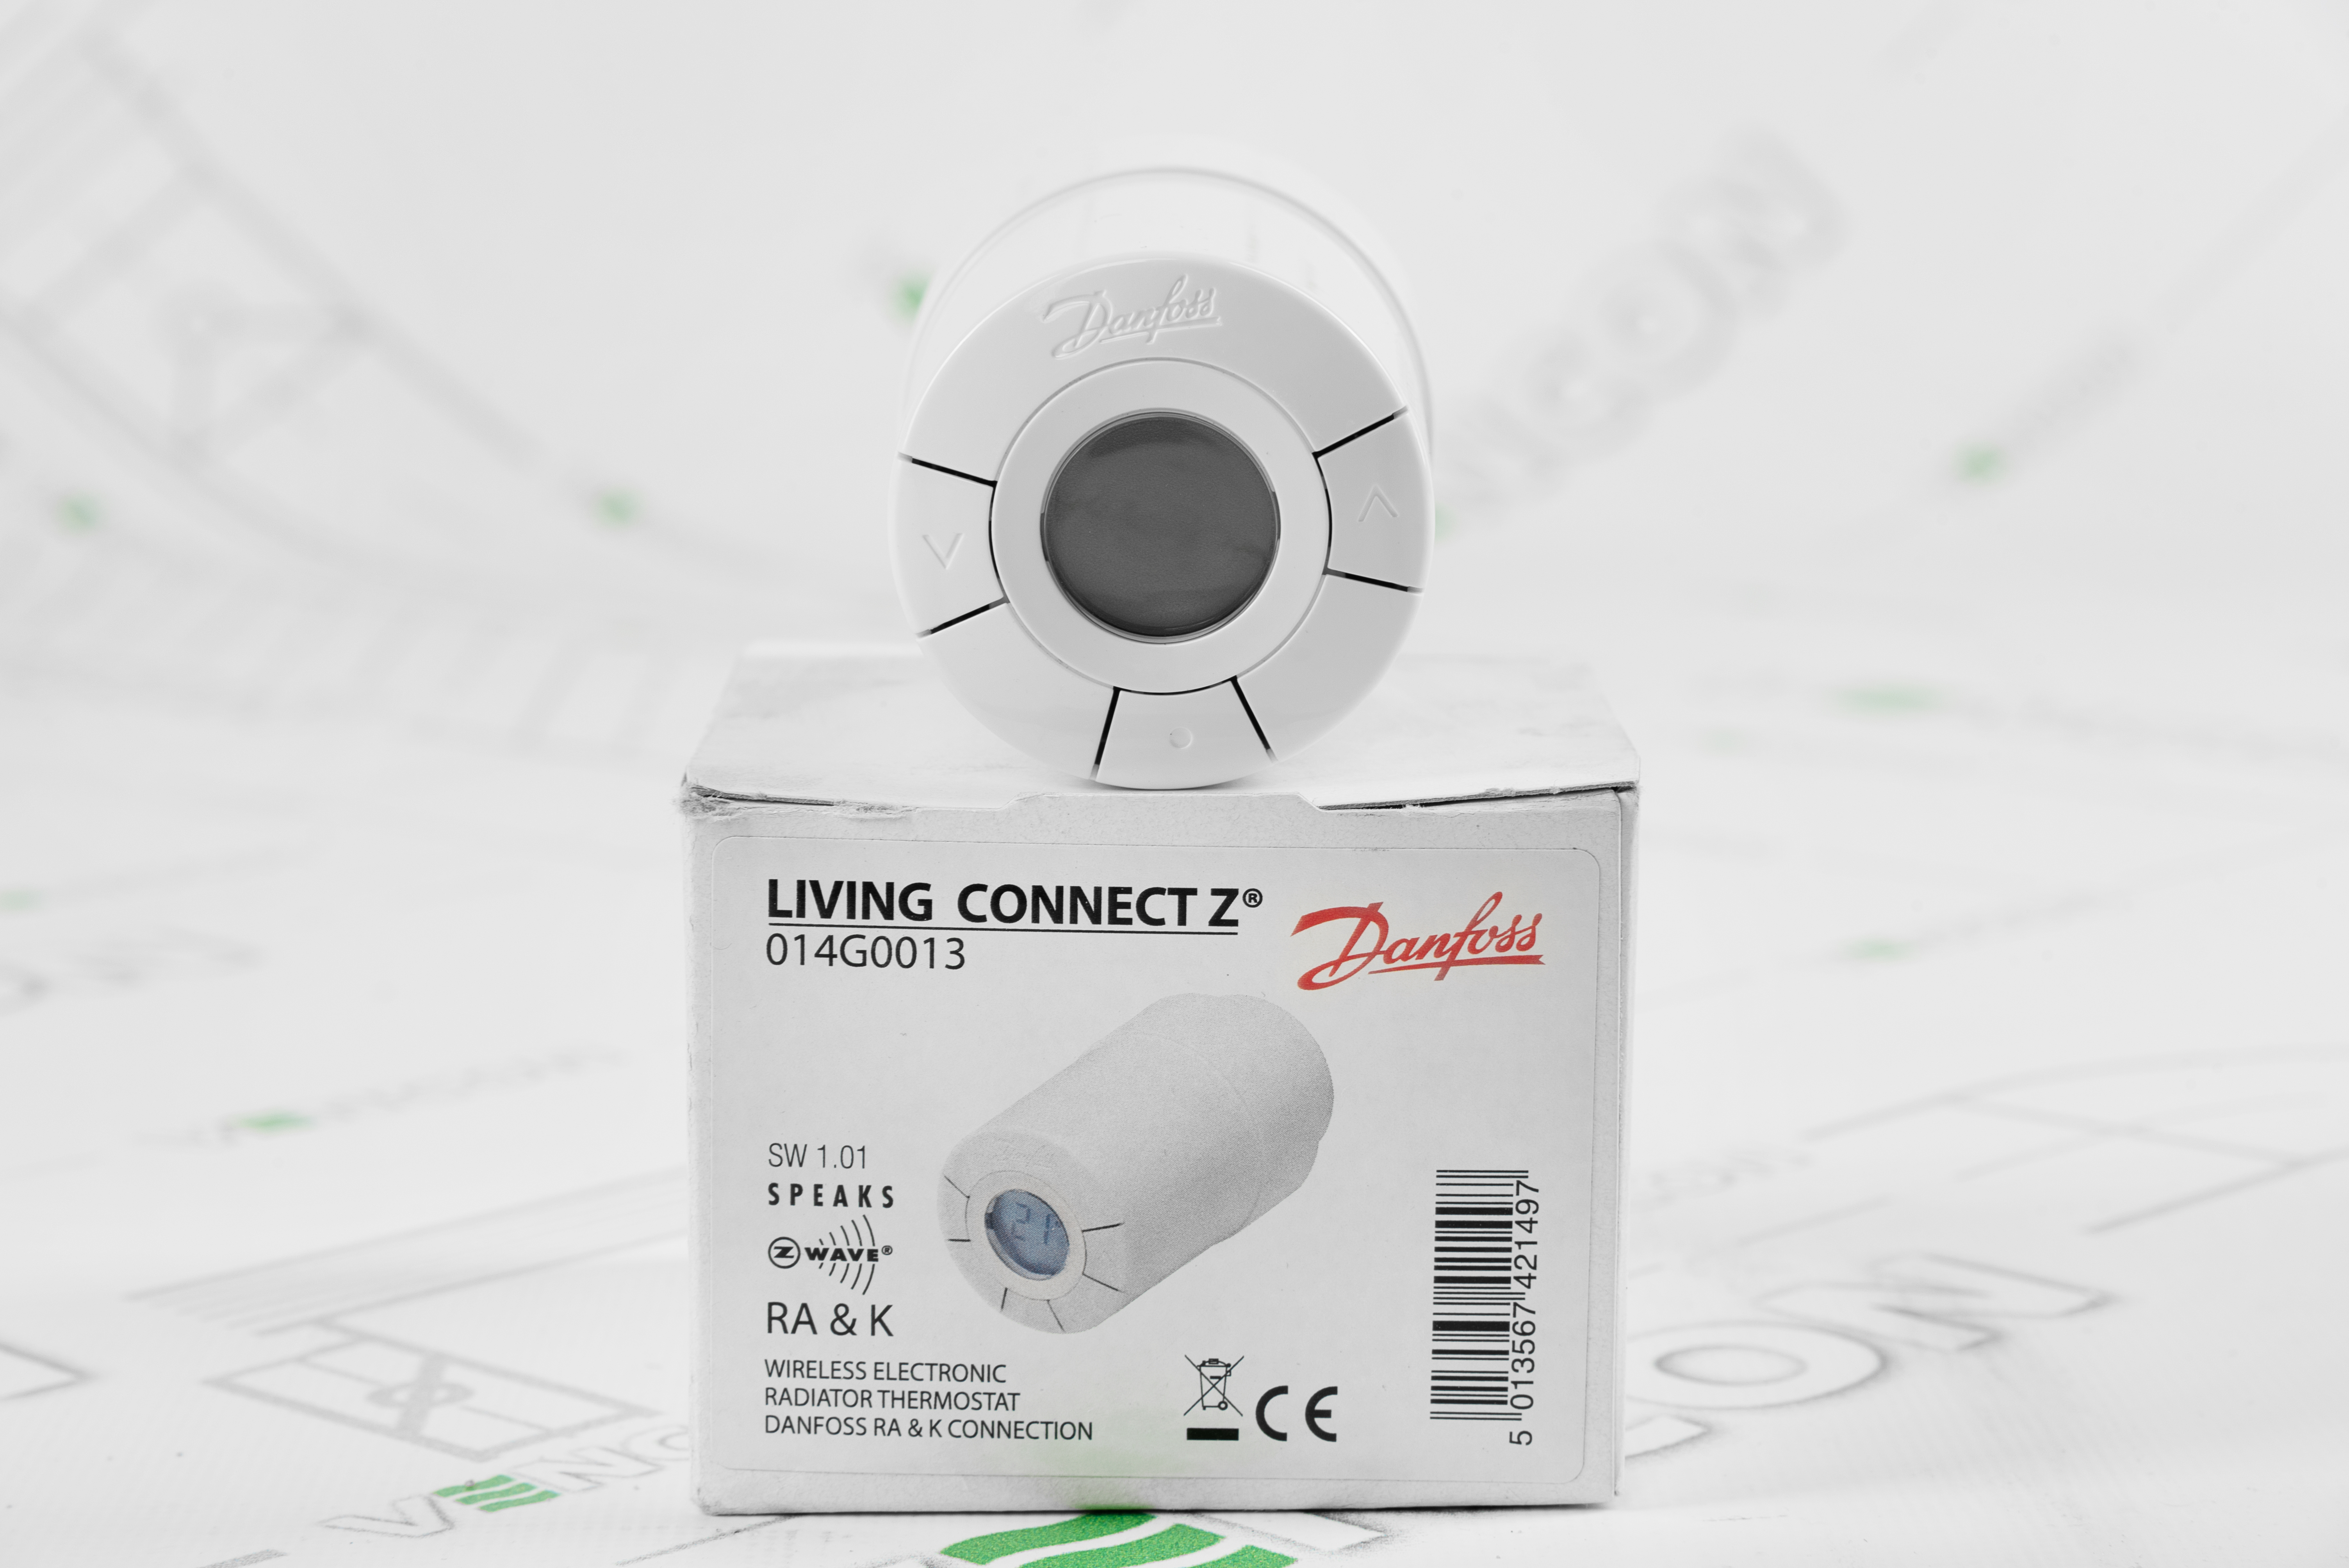 продаём Danfoss Living Connect Z (014G0013) в Украине - фото 4